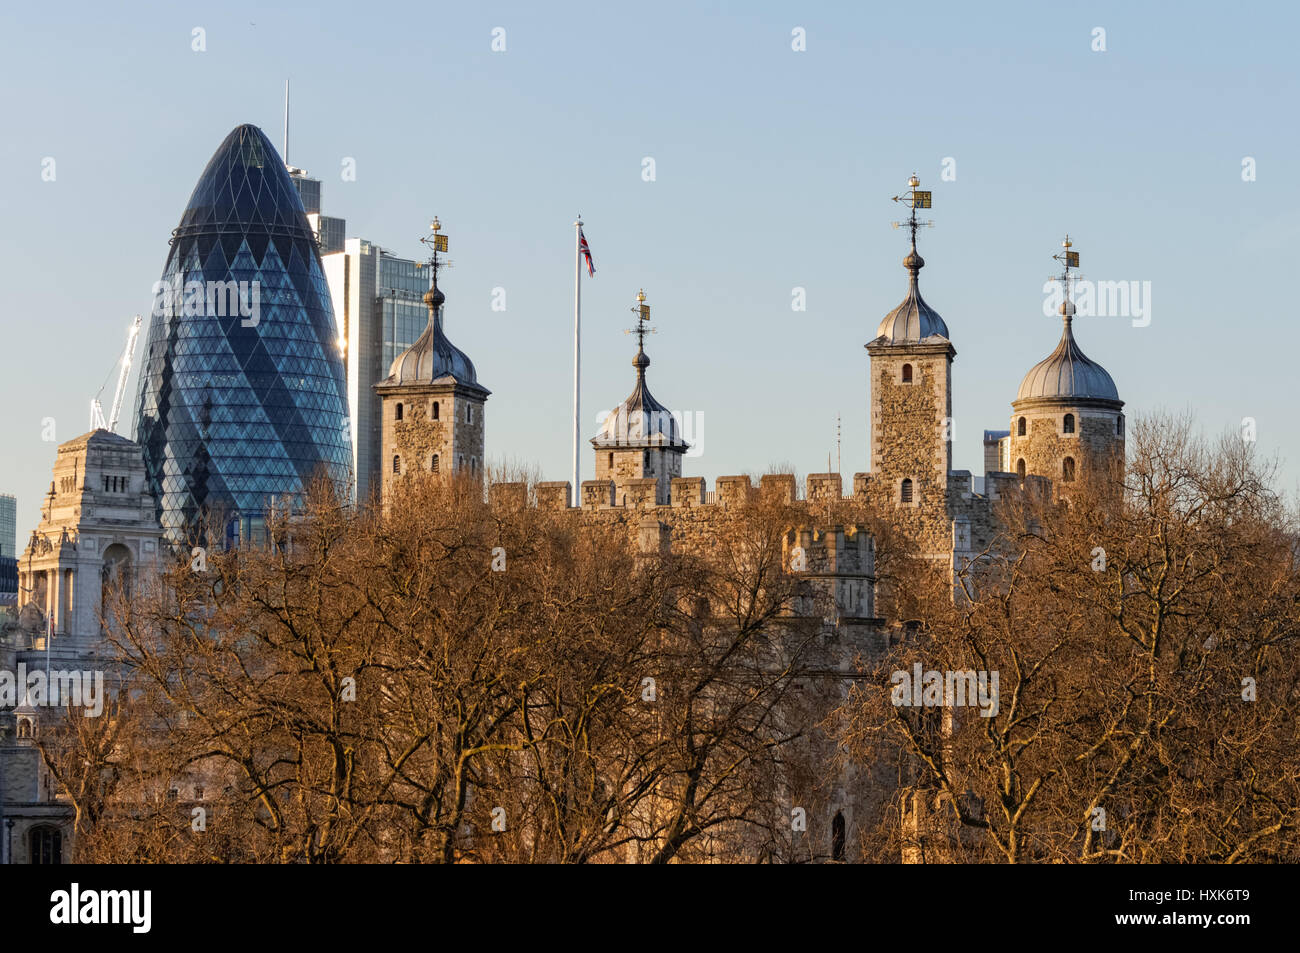 La Tour de Londres avec 30 St Mary Axe connu sous le nom de gratte-ciel le Gherkin en arrière-plan, Londres Angleterre Royaume-Uni UK Banque D'Images